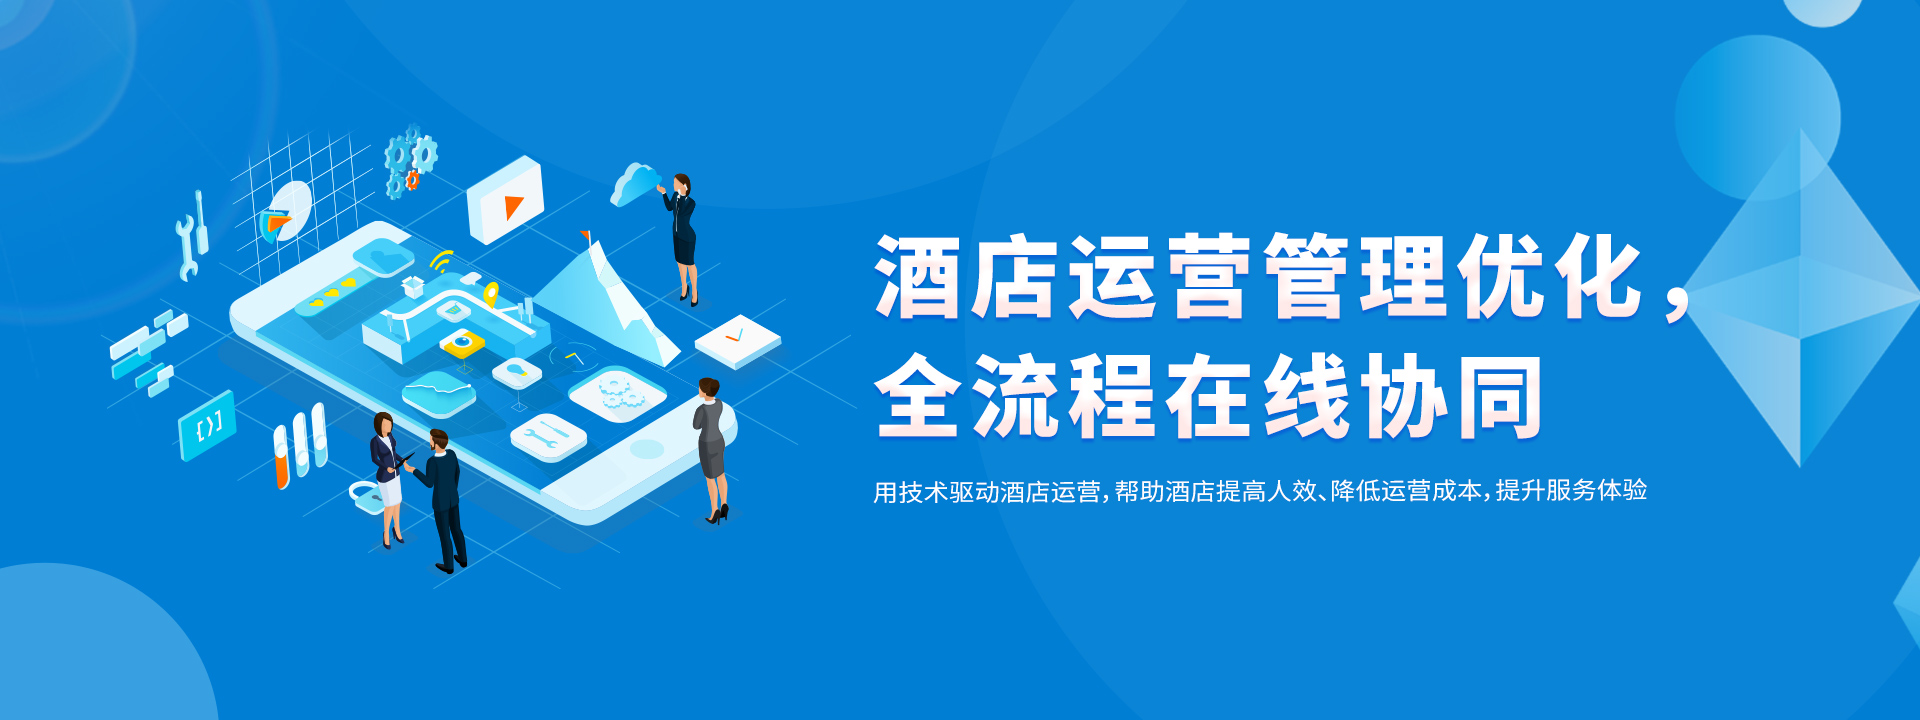 洛壹网络签约深圳丰润达数字科技有限公司网站建设服务